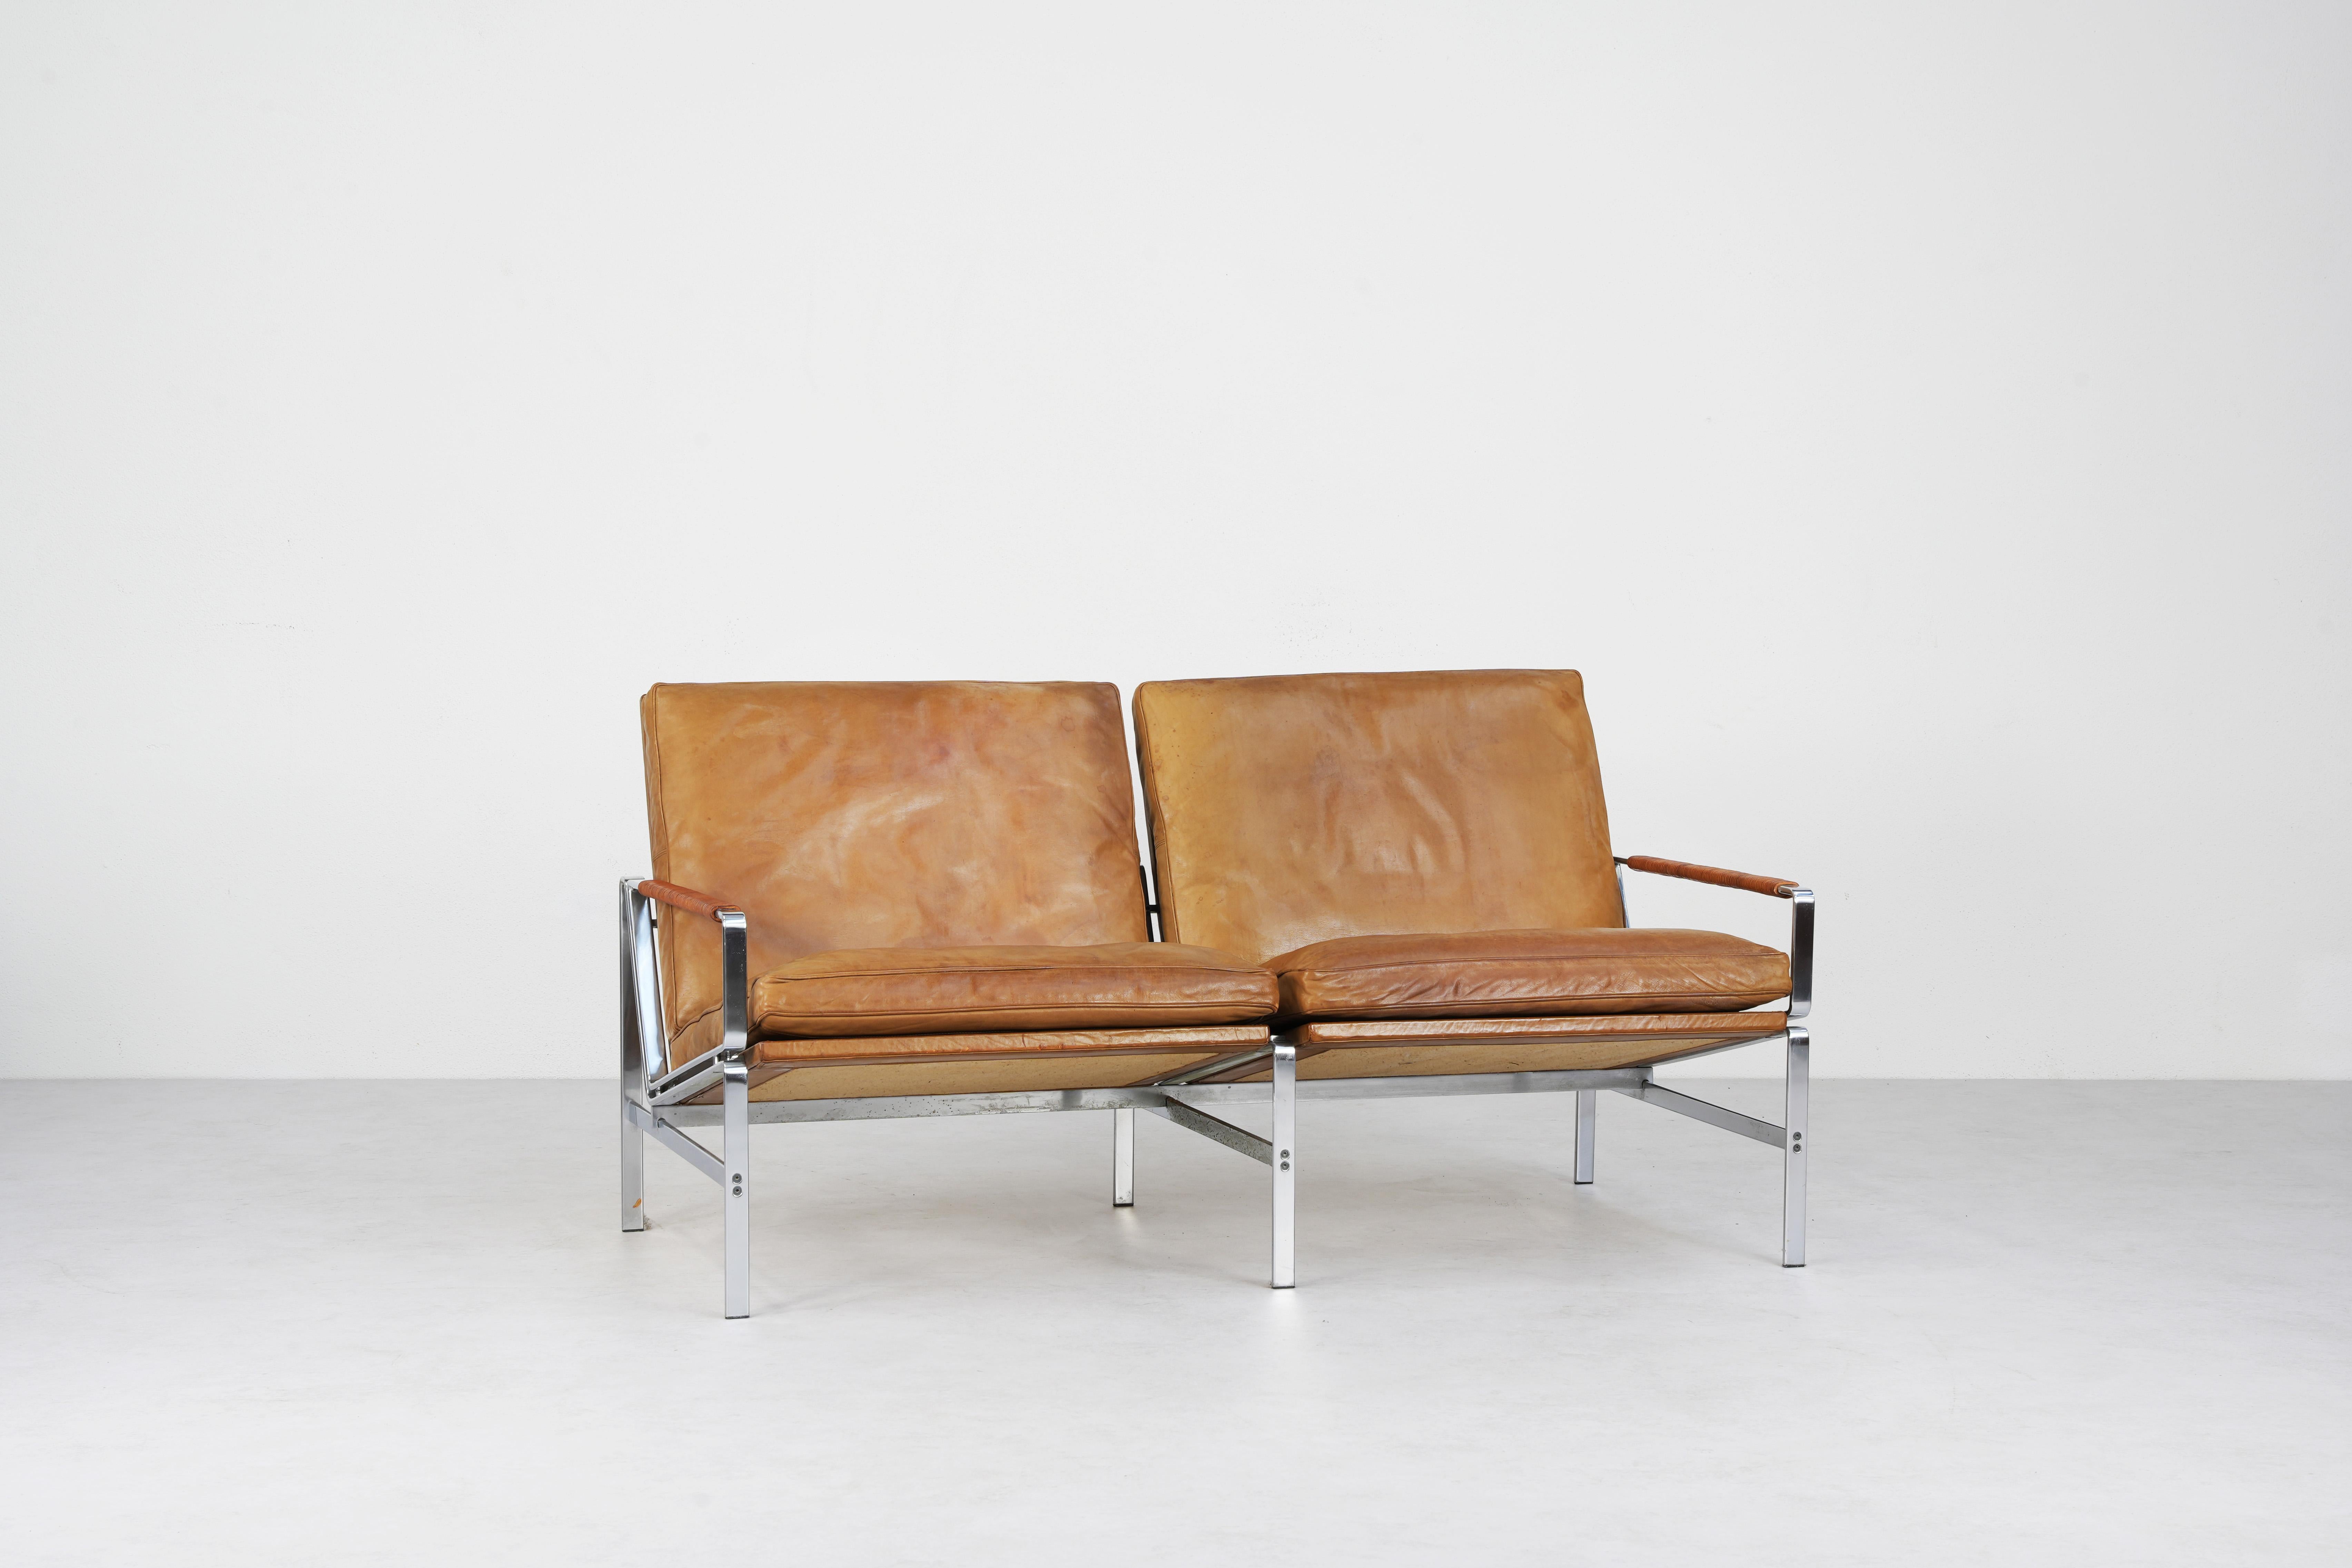 Schönes Sofa, entworfen von Preben Fabricius & Jørgen Kastholm und hergestellt von Alfred Kill International, Deutschland 1968. 
Dieser elegante Zweisitzer aus der Mitte des Jahrhunderts verbindet mühelos Form und Funktion. Das Sofa befindet sich in